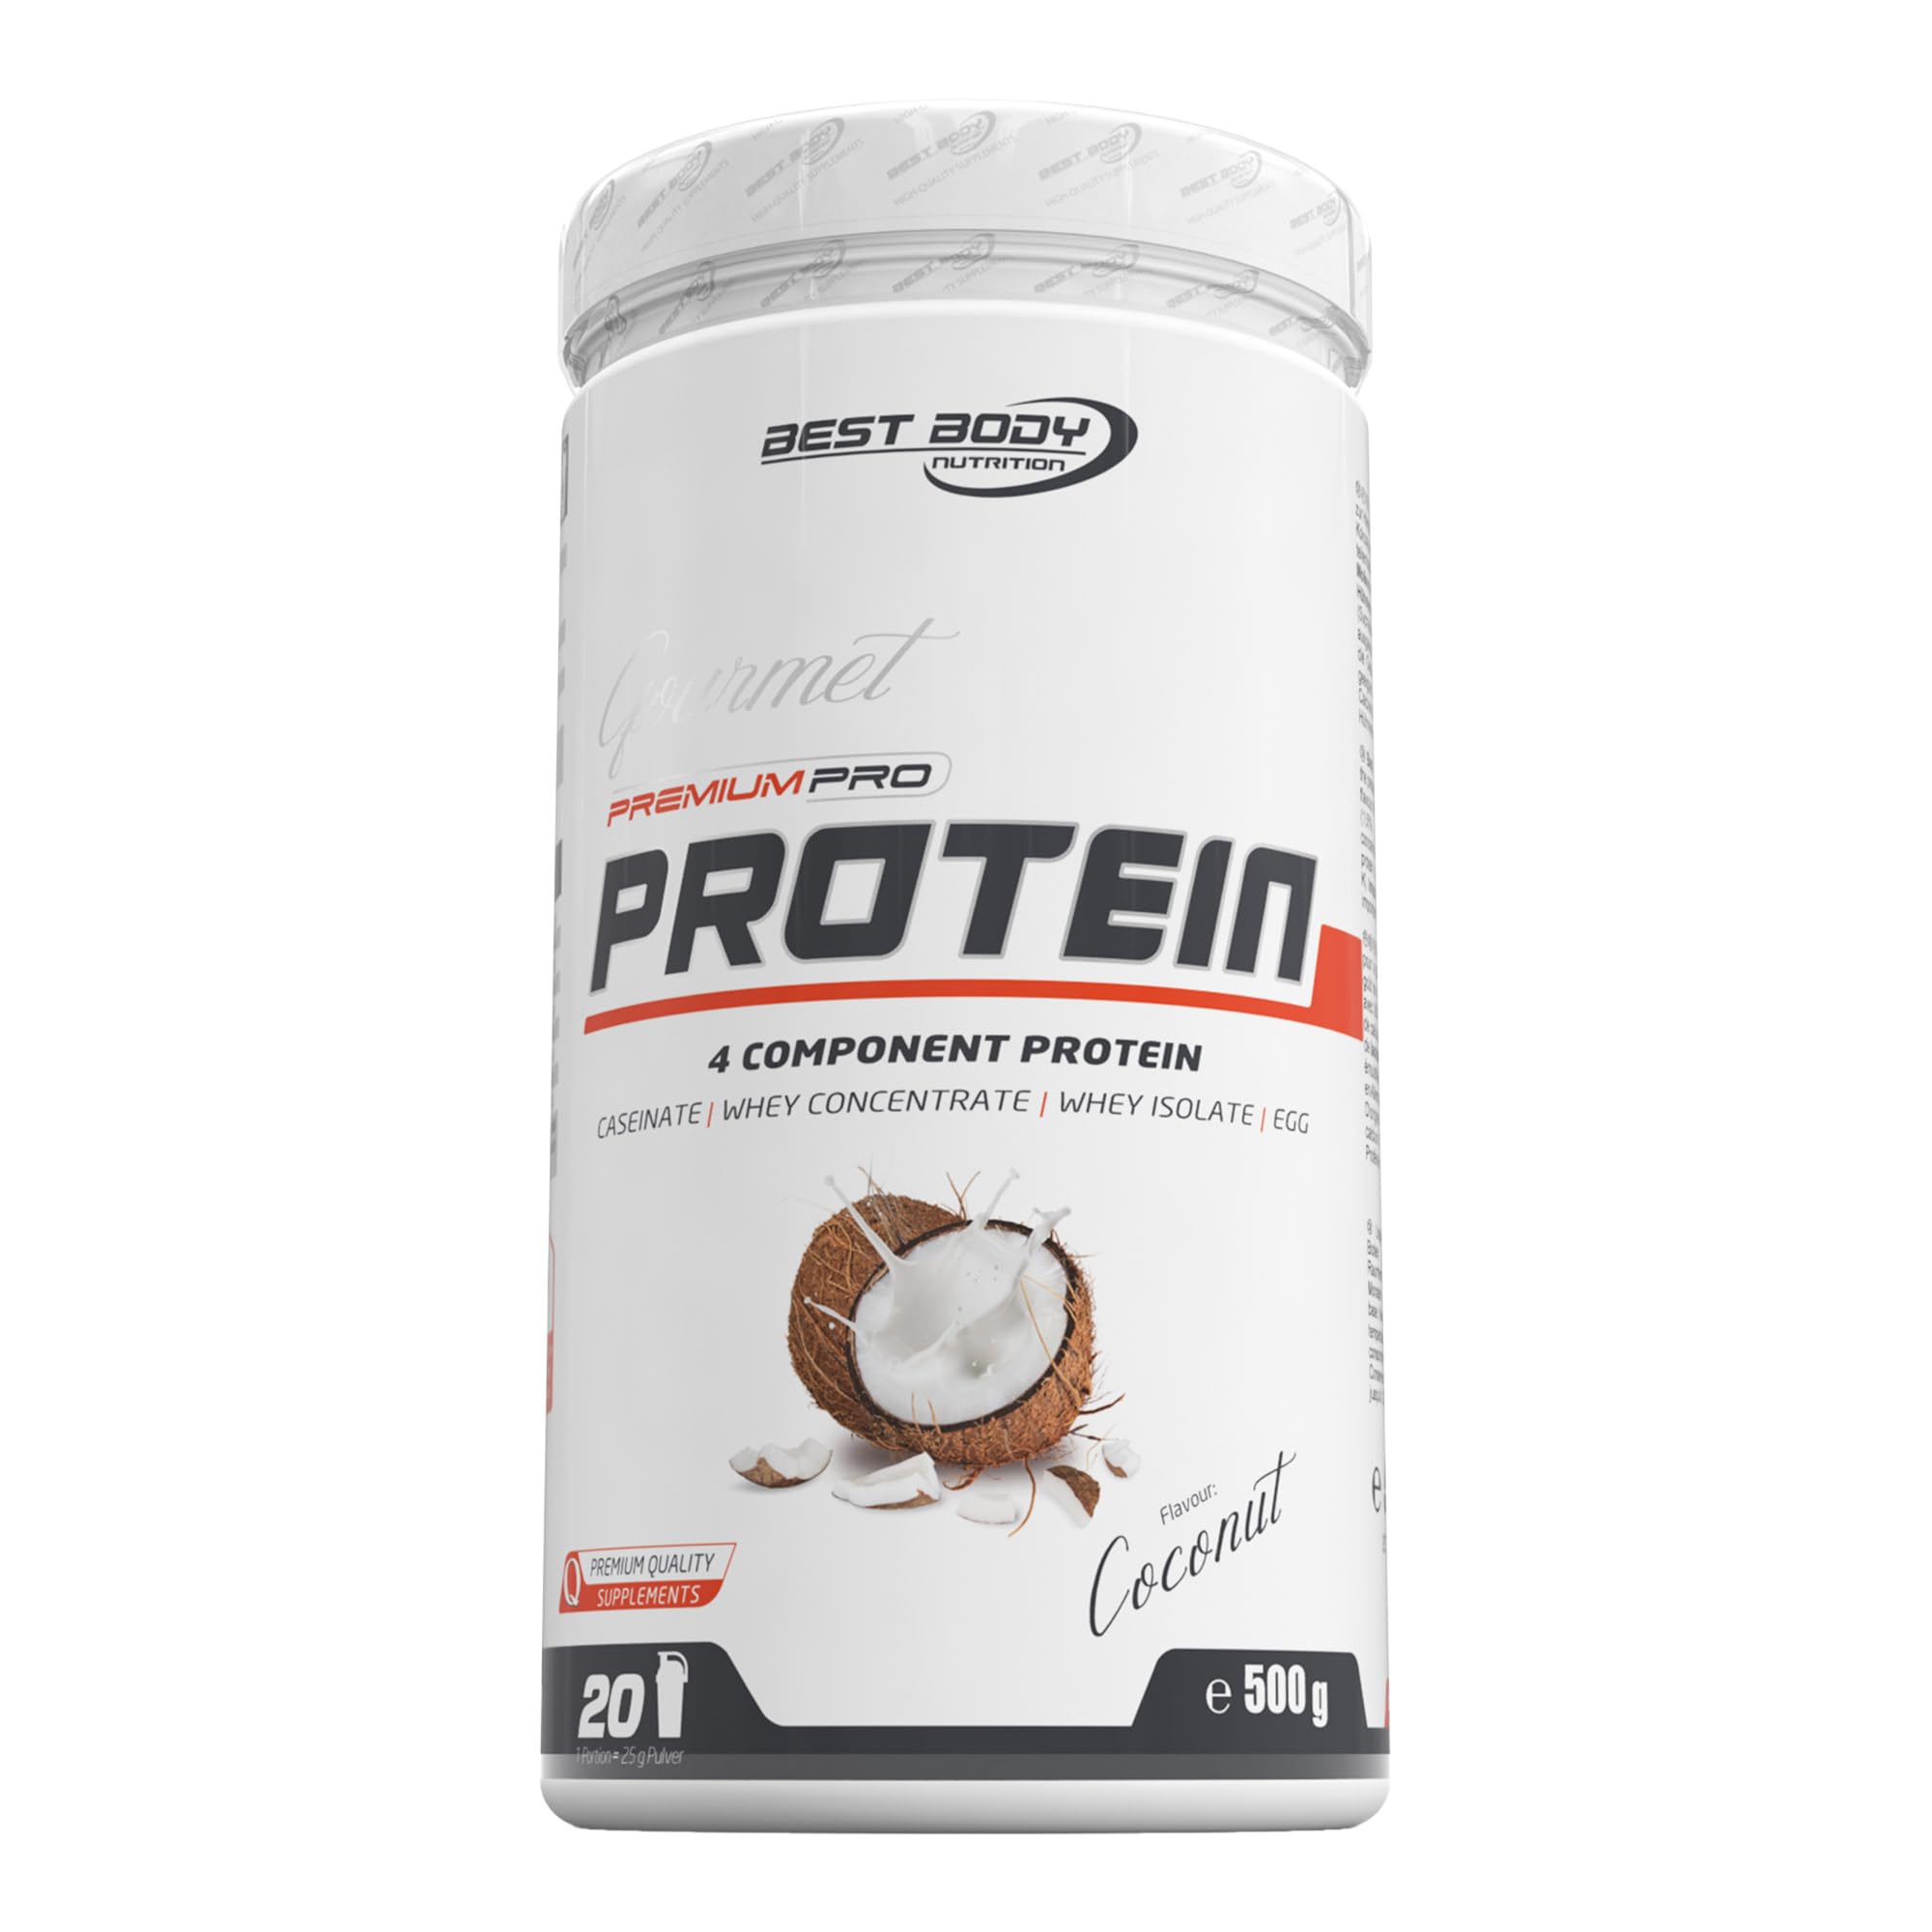 Best Body Nutrition Gourmet Premium Pro Protein, Coconut, 4 Komponenten Protein Shake: Caseinat, Whey Konzentrat, Whey Isolat, Eiprotein, 500 g Dose